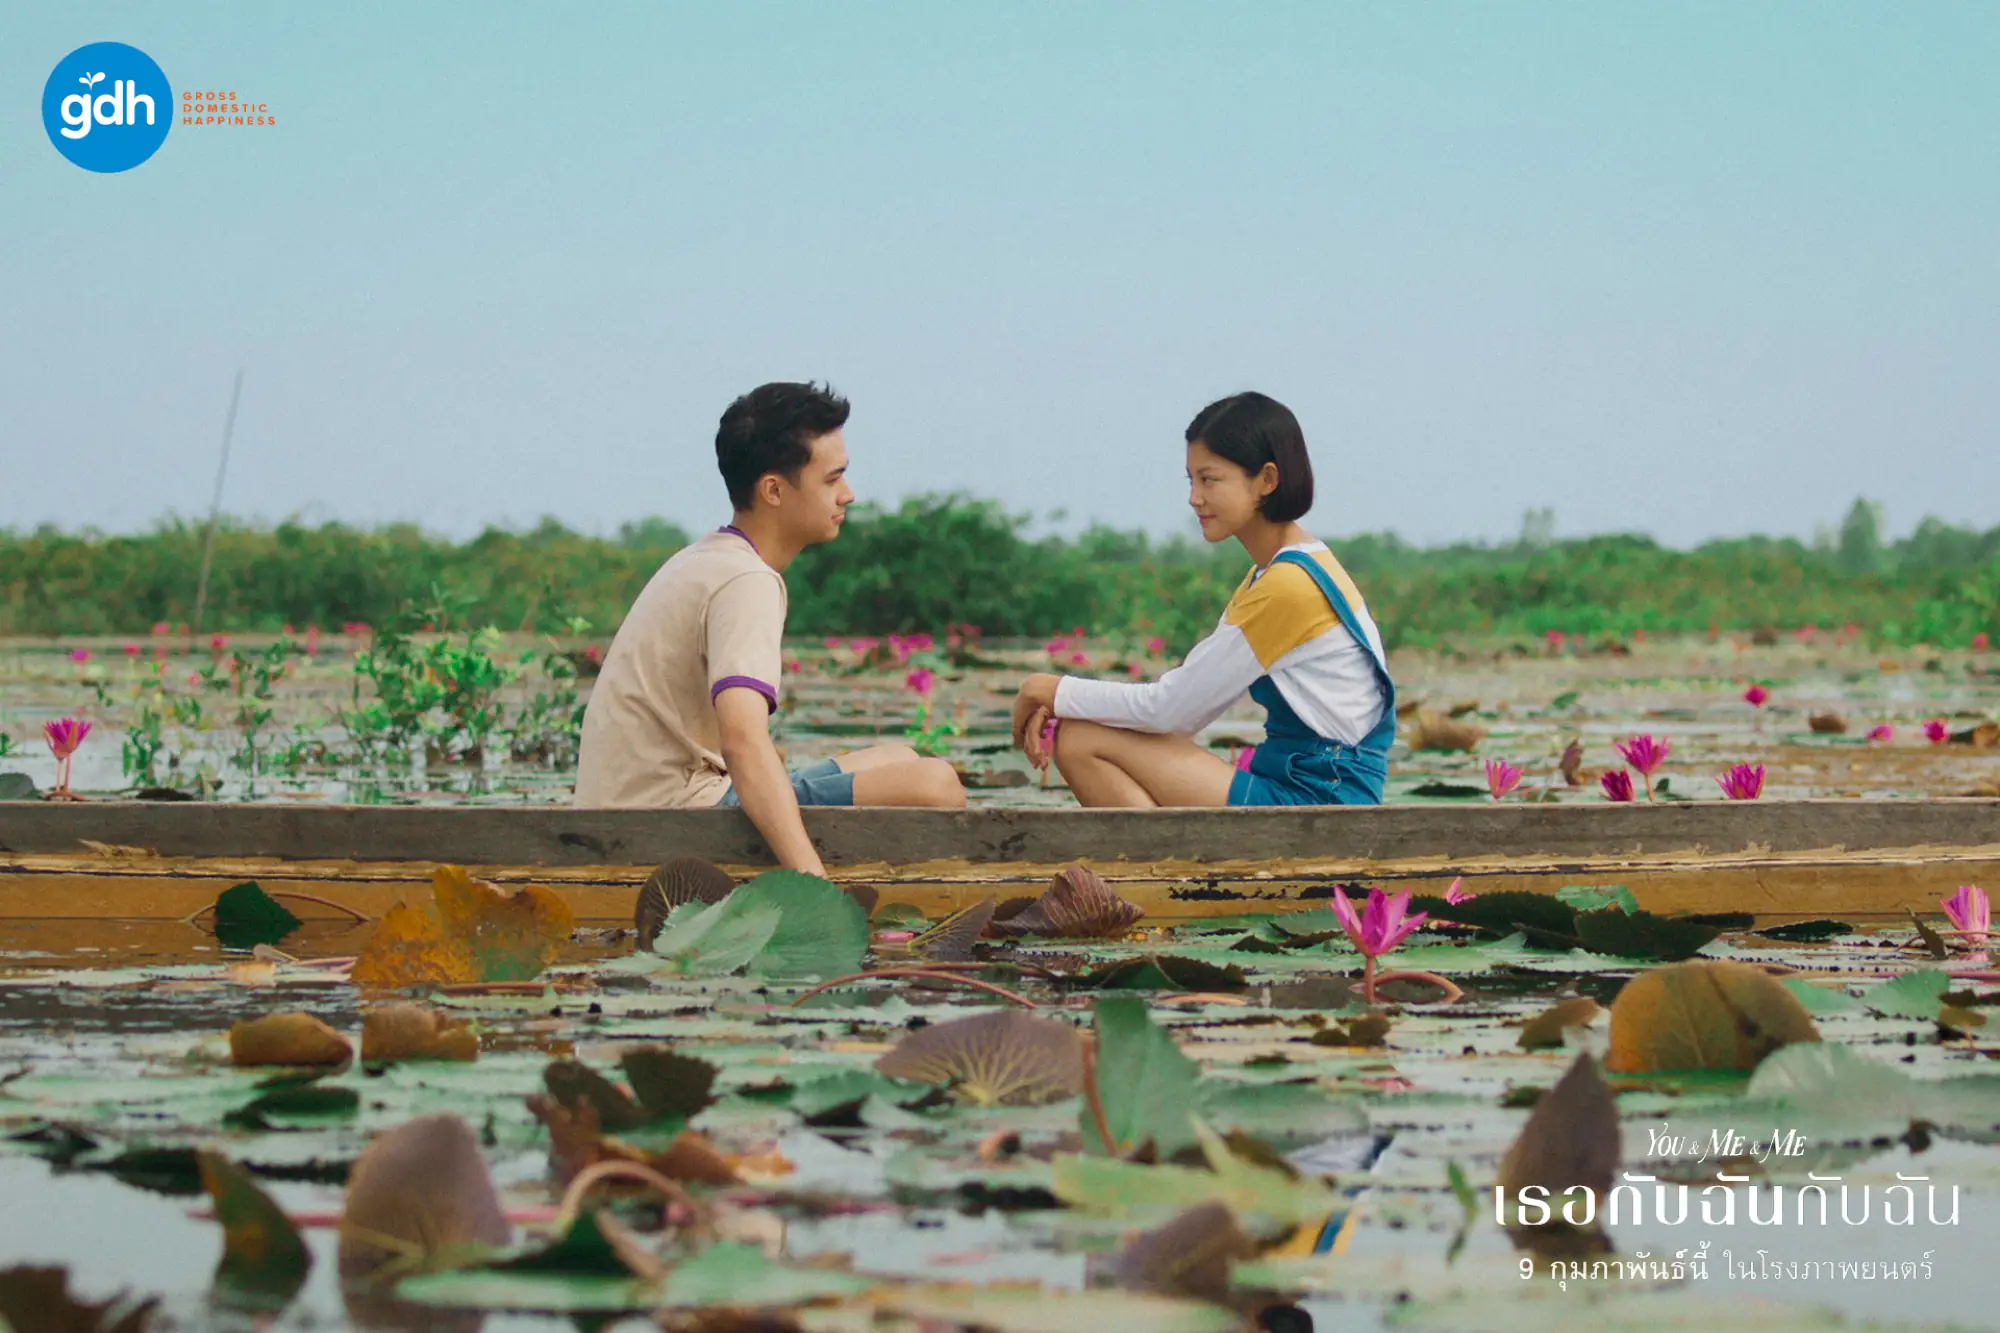 泰国电影《你与我和我》(เธอกับฉันกับฉัน;You & Me & Me)剧照（图片来源：GDH）